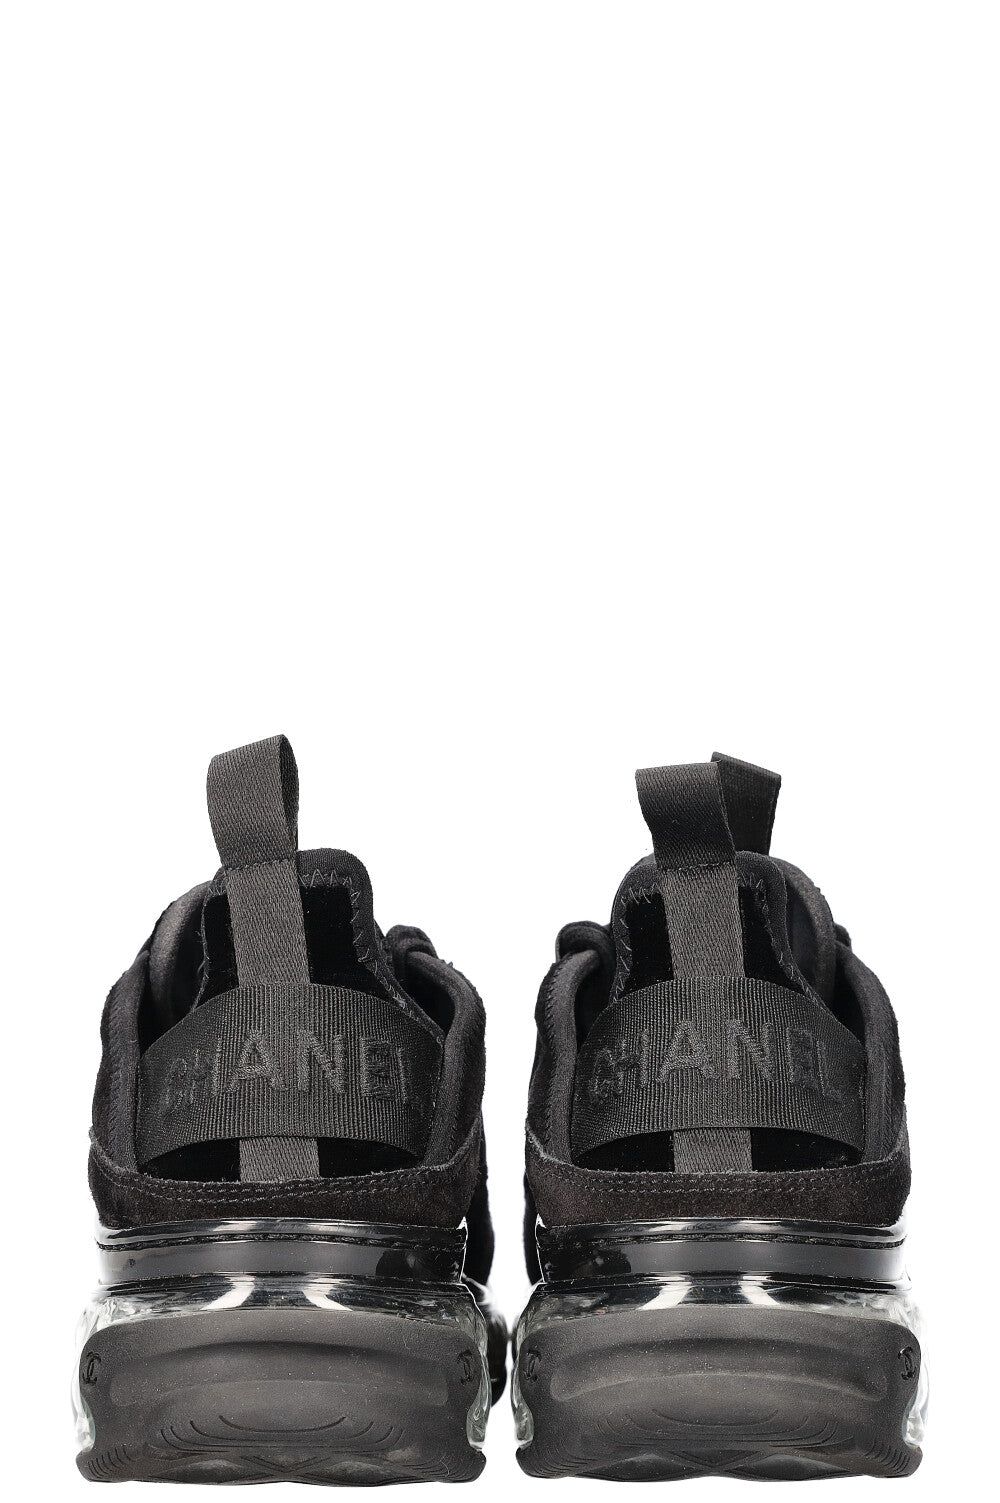 CHANEL Sneakers Velvet Black